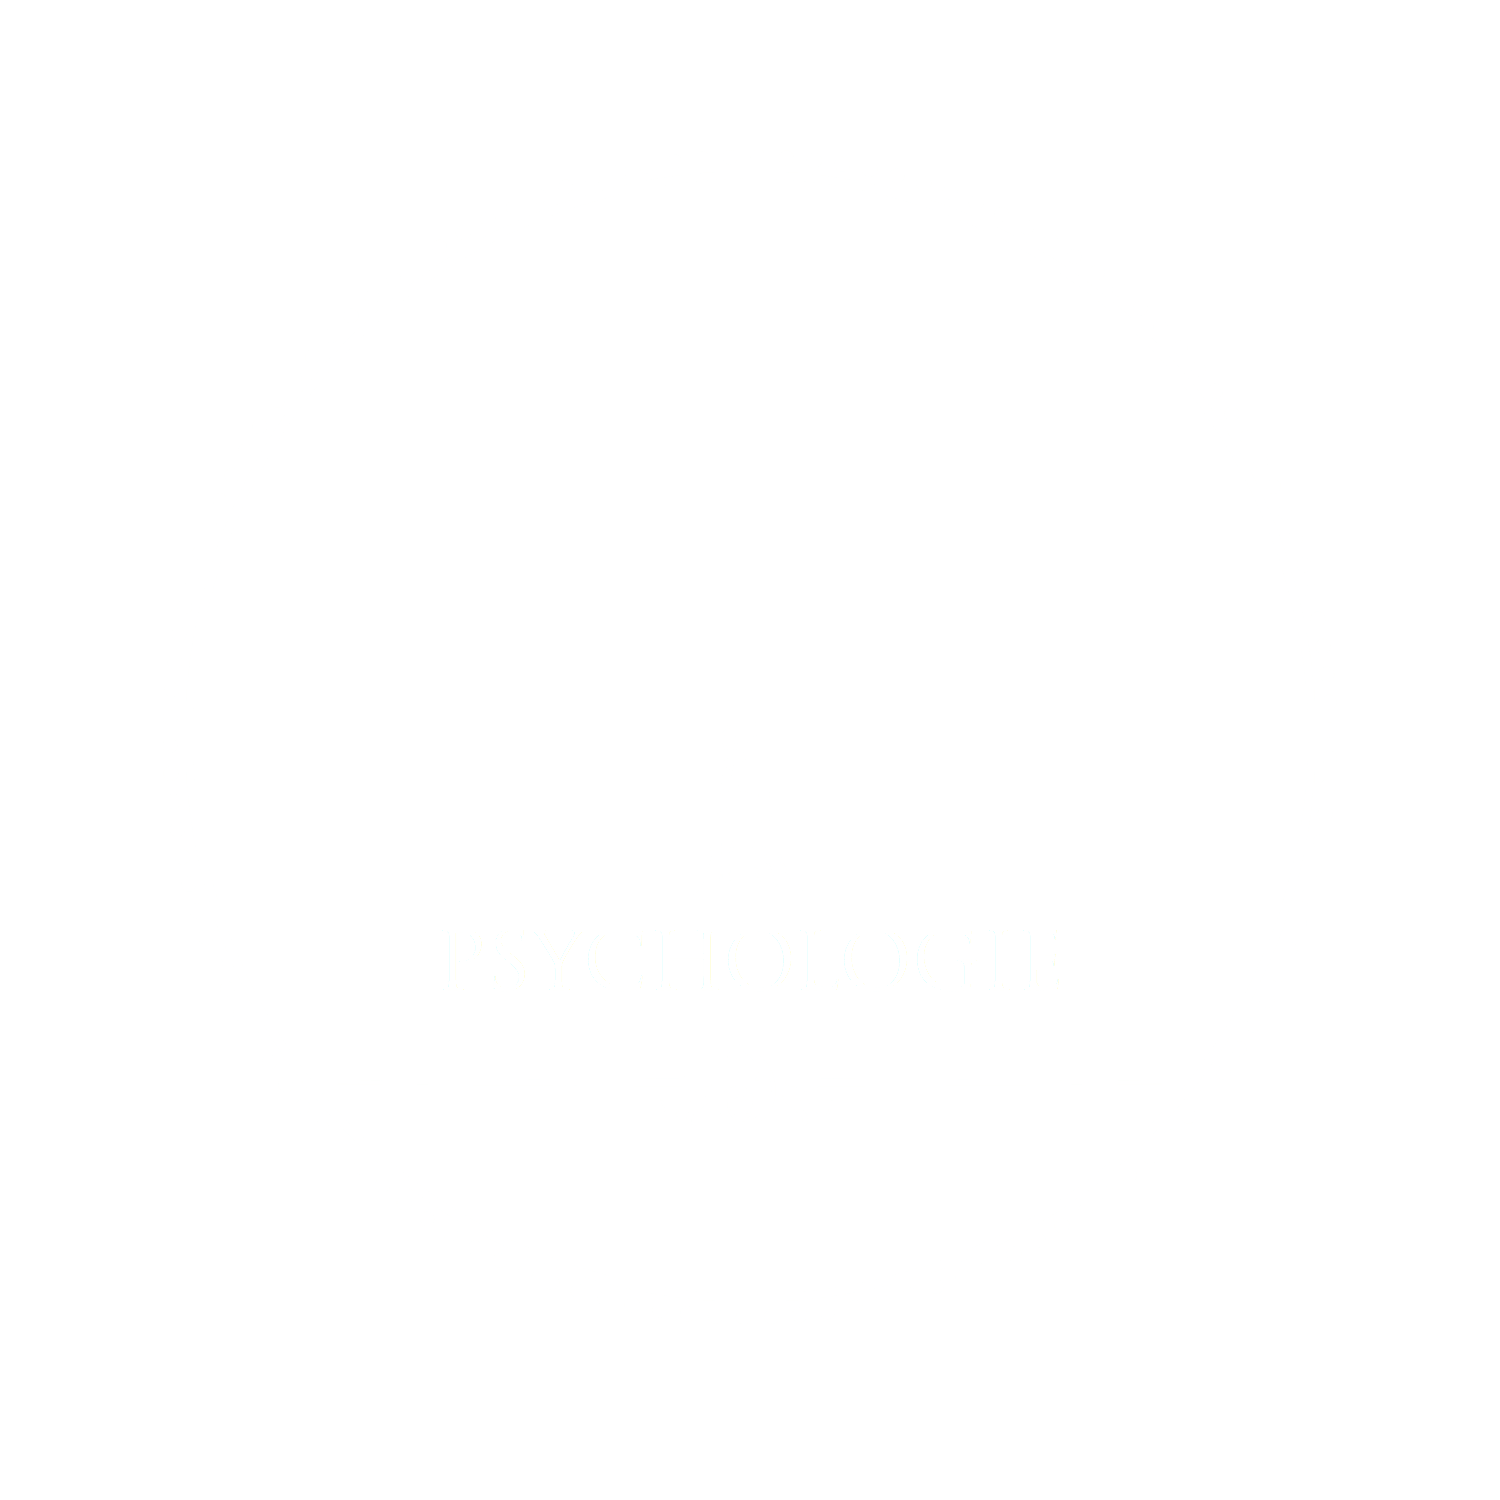 VeldhoenPsychologie